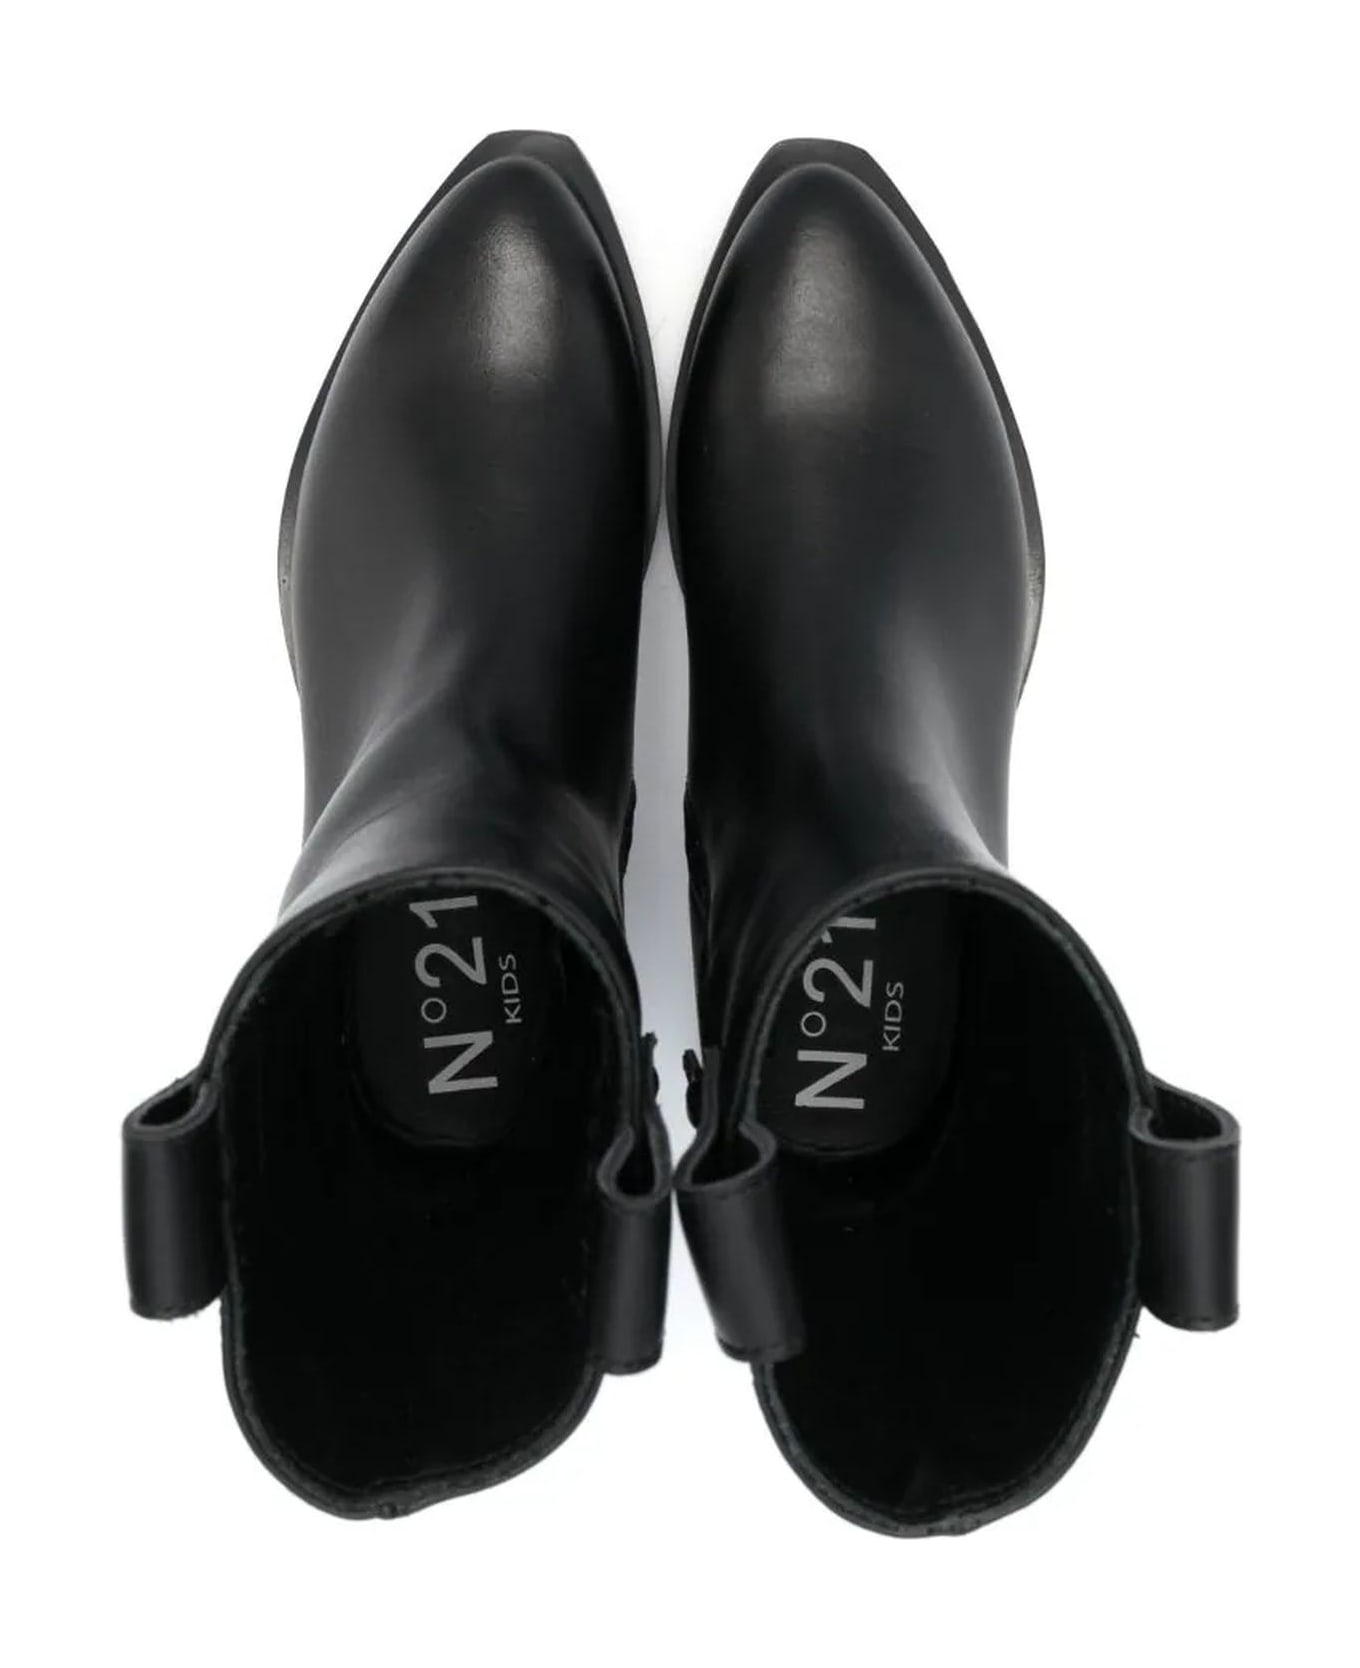 N.21 N°21 Boots Black - Black シューズ